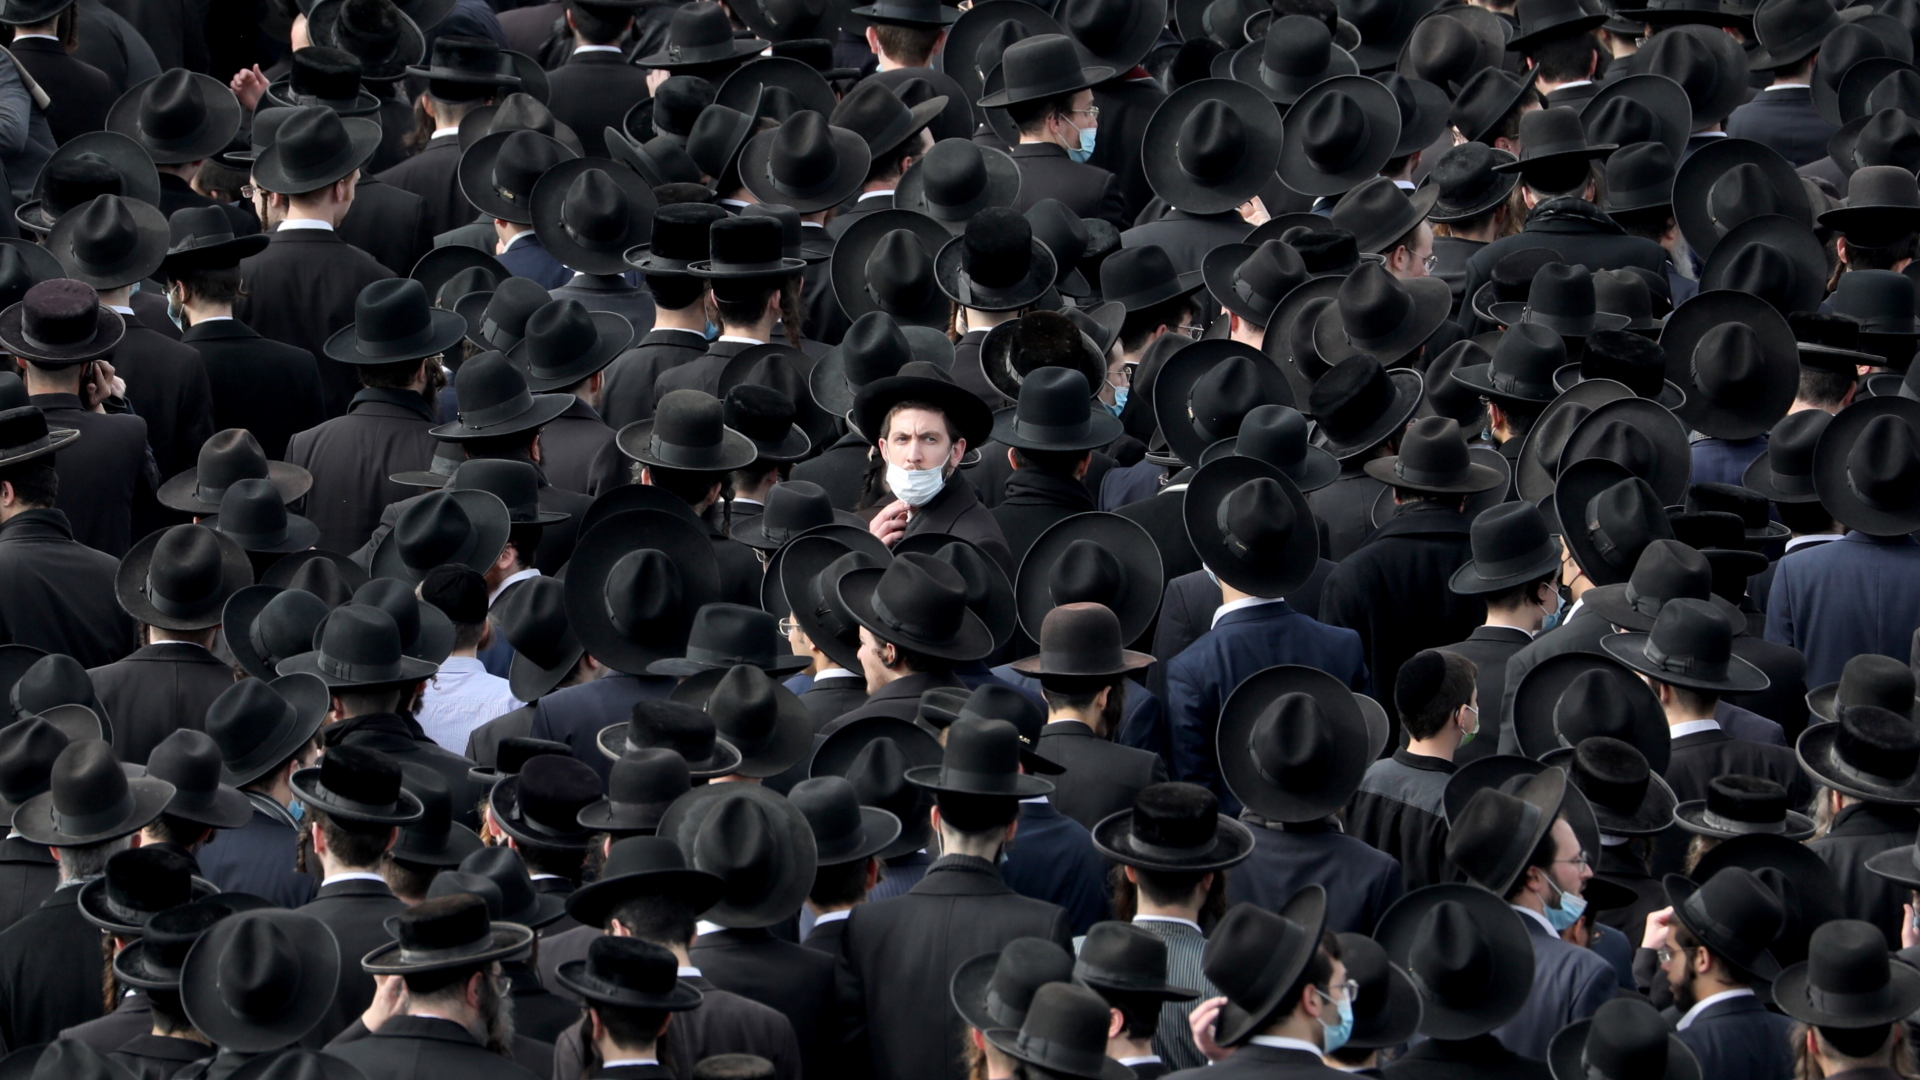 Orthodoxe Juden versammeln sich im Januar 2021 zur Beisetzung eines Rabbiners. | ABIR SULTAN/EPA-EFE/Shutterstock